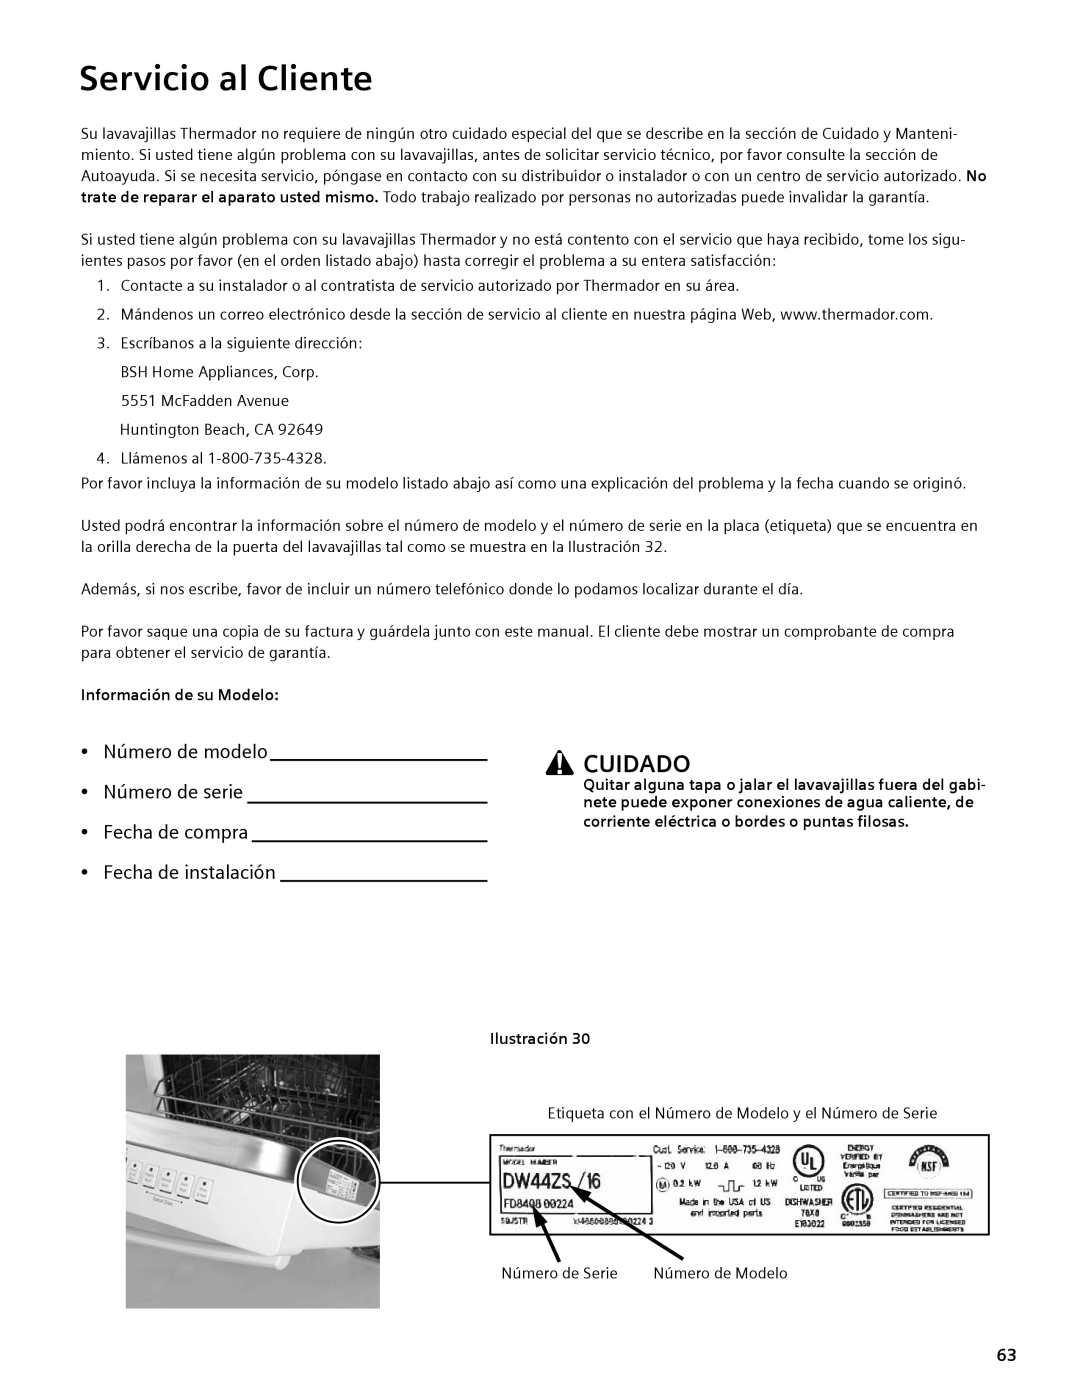 Thermador DWHD94EP, DWHD94BS, DWHD94BP manual Servicio al Cliente, Cuidado, Información de su Modelo, Ilustración 